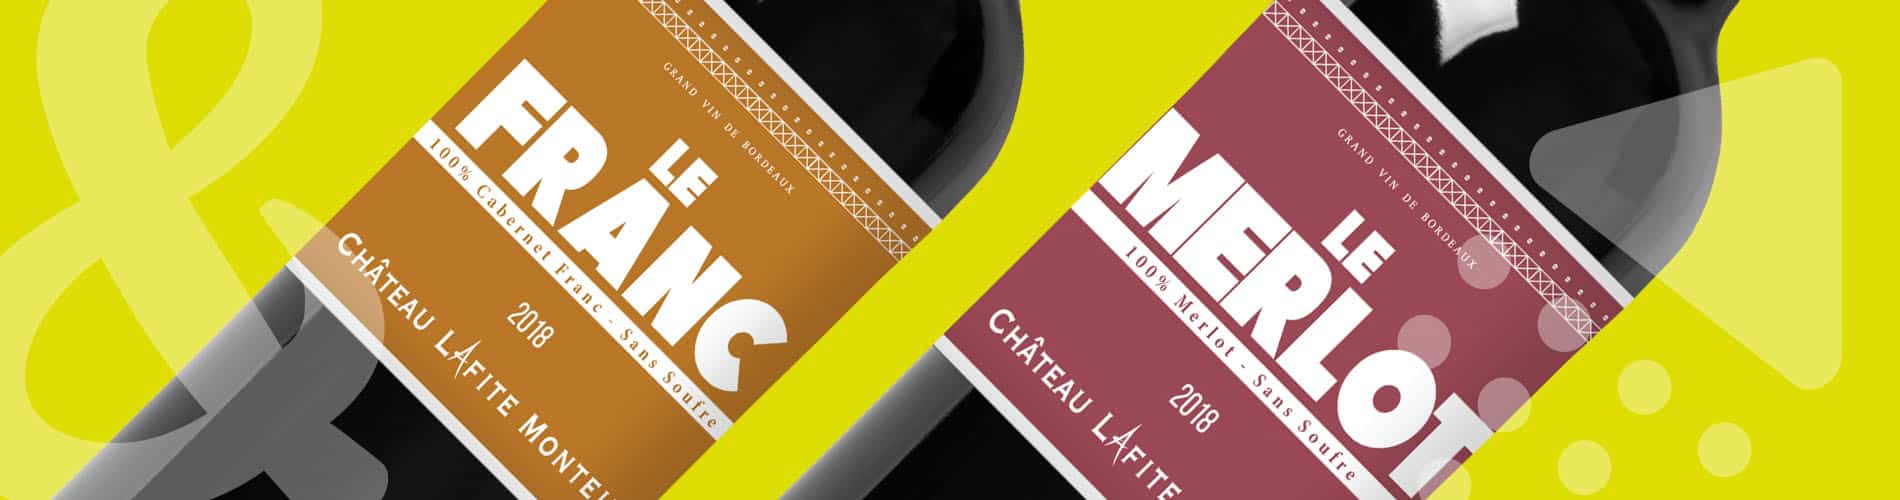 Up&Co étiquettes de vin Château Lafite-Monteil